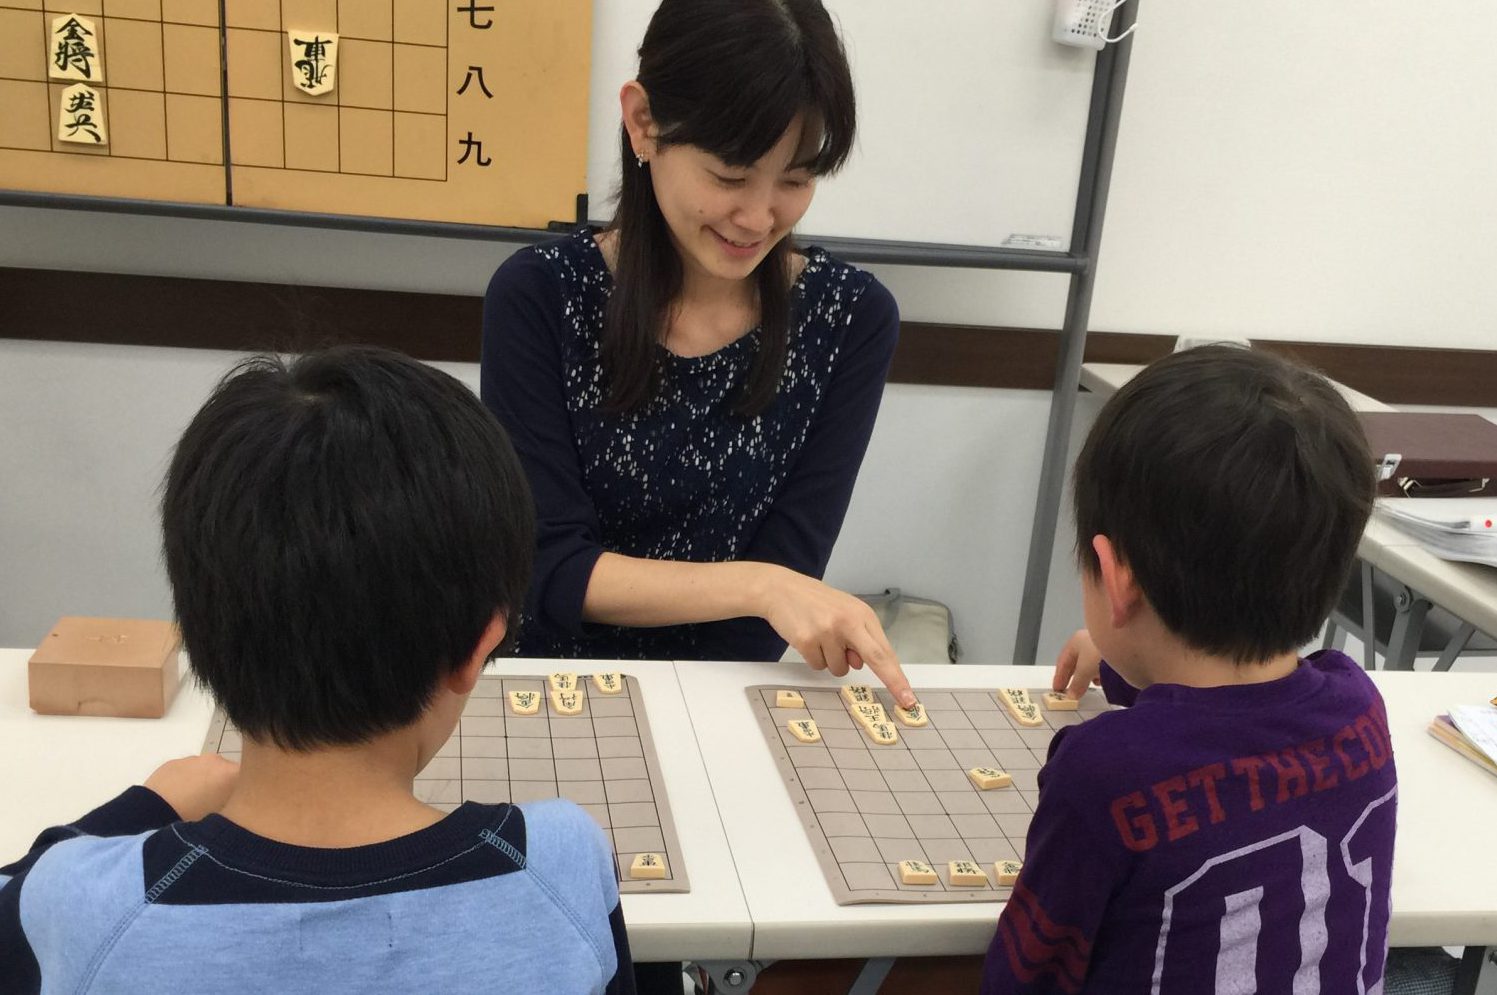 対面式の将棋は将棋教室や道場で